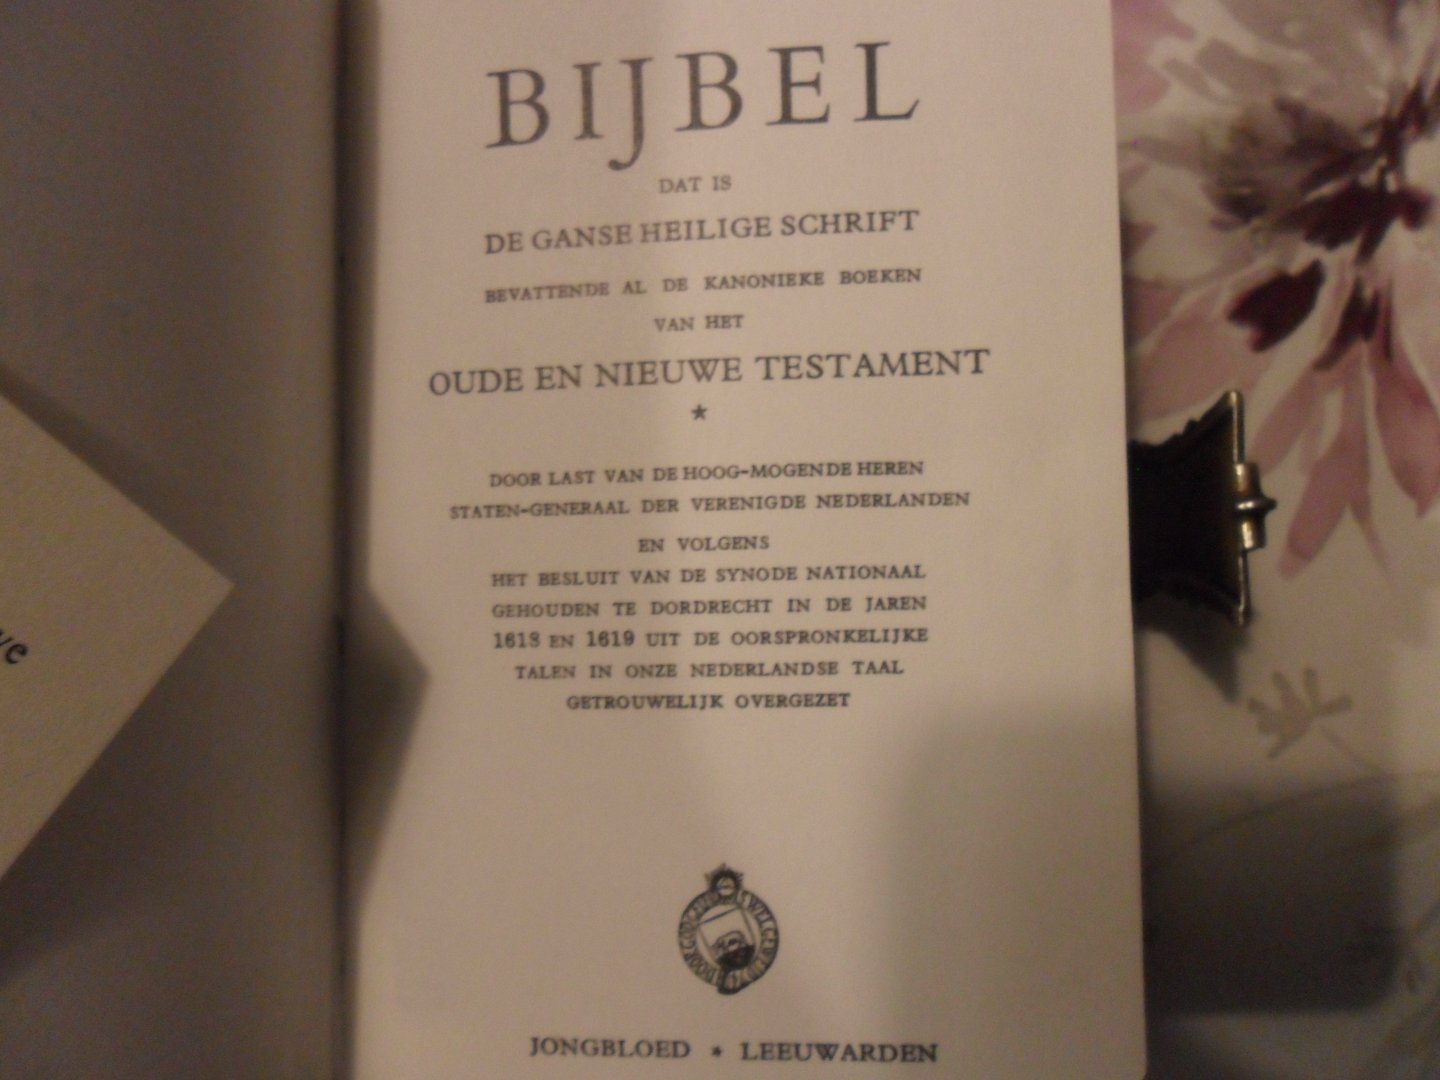 Door last van de Hoog-mogende heren staten-generaal - Bijbel met zilveren slotje